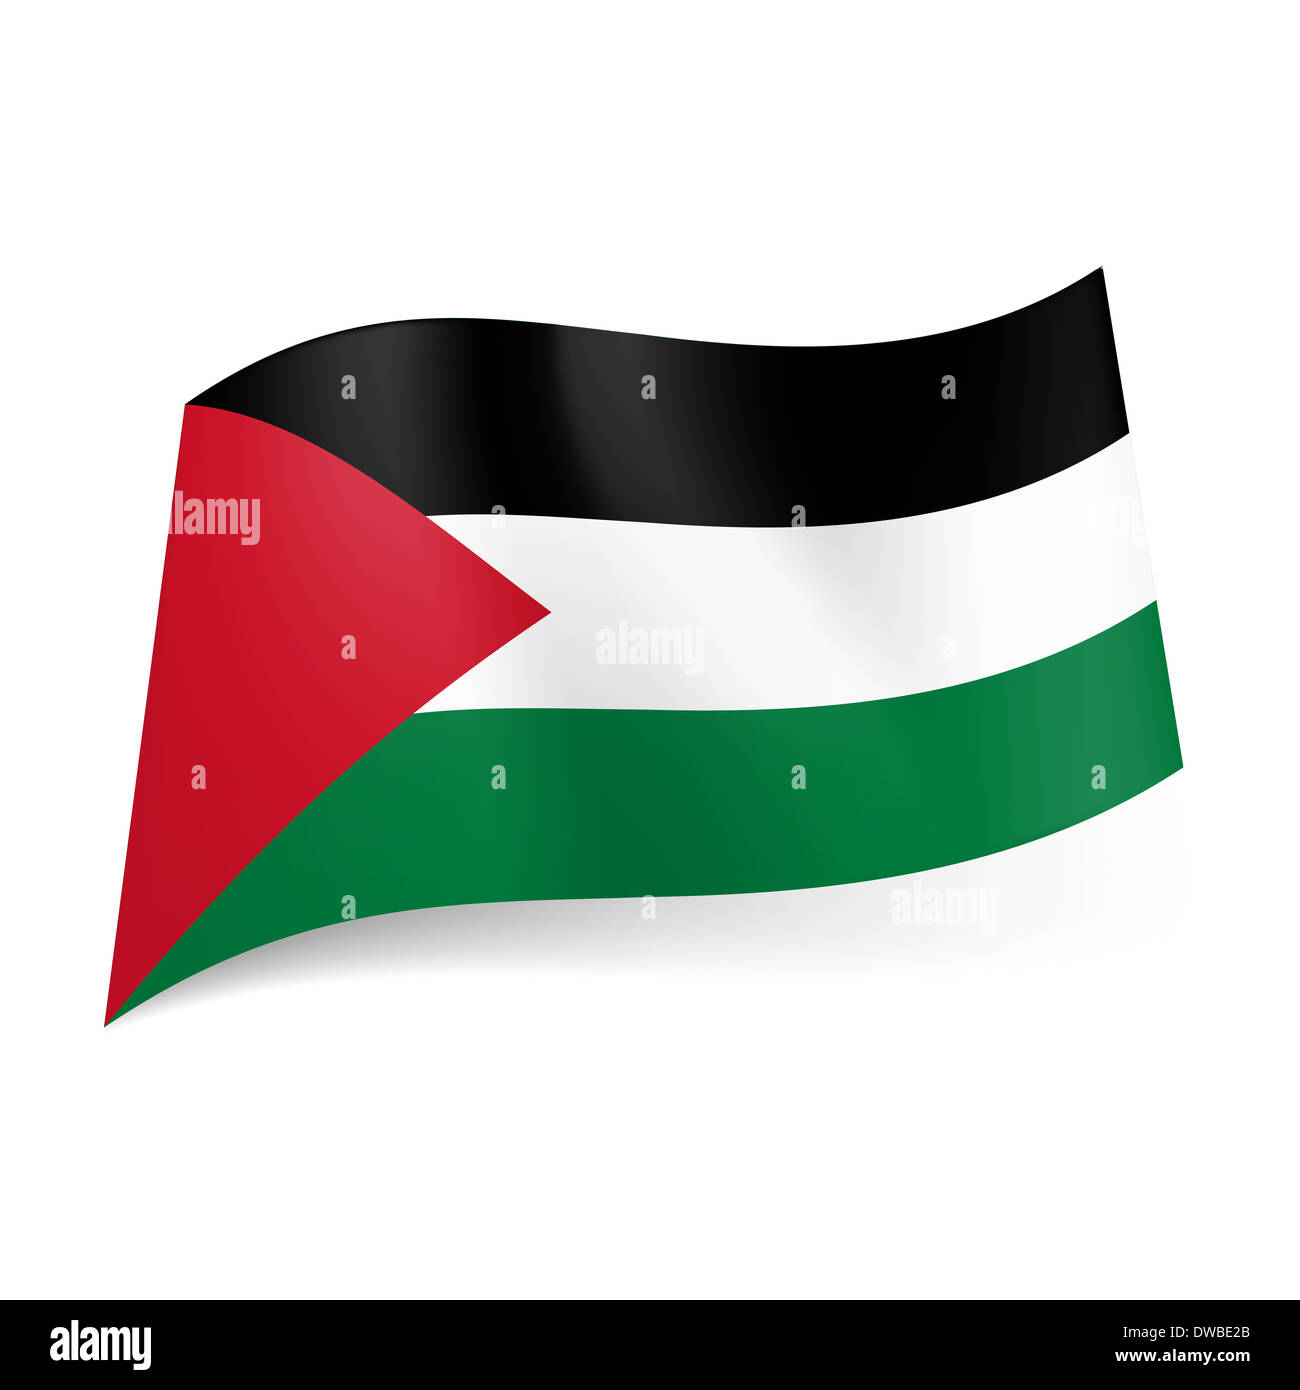 Nationalflagge von Palästina: schwarz, weiß und grün Querstreifen mit roten  Dreieck auf der linken Seite Stockfotografie - Alamy